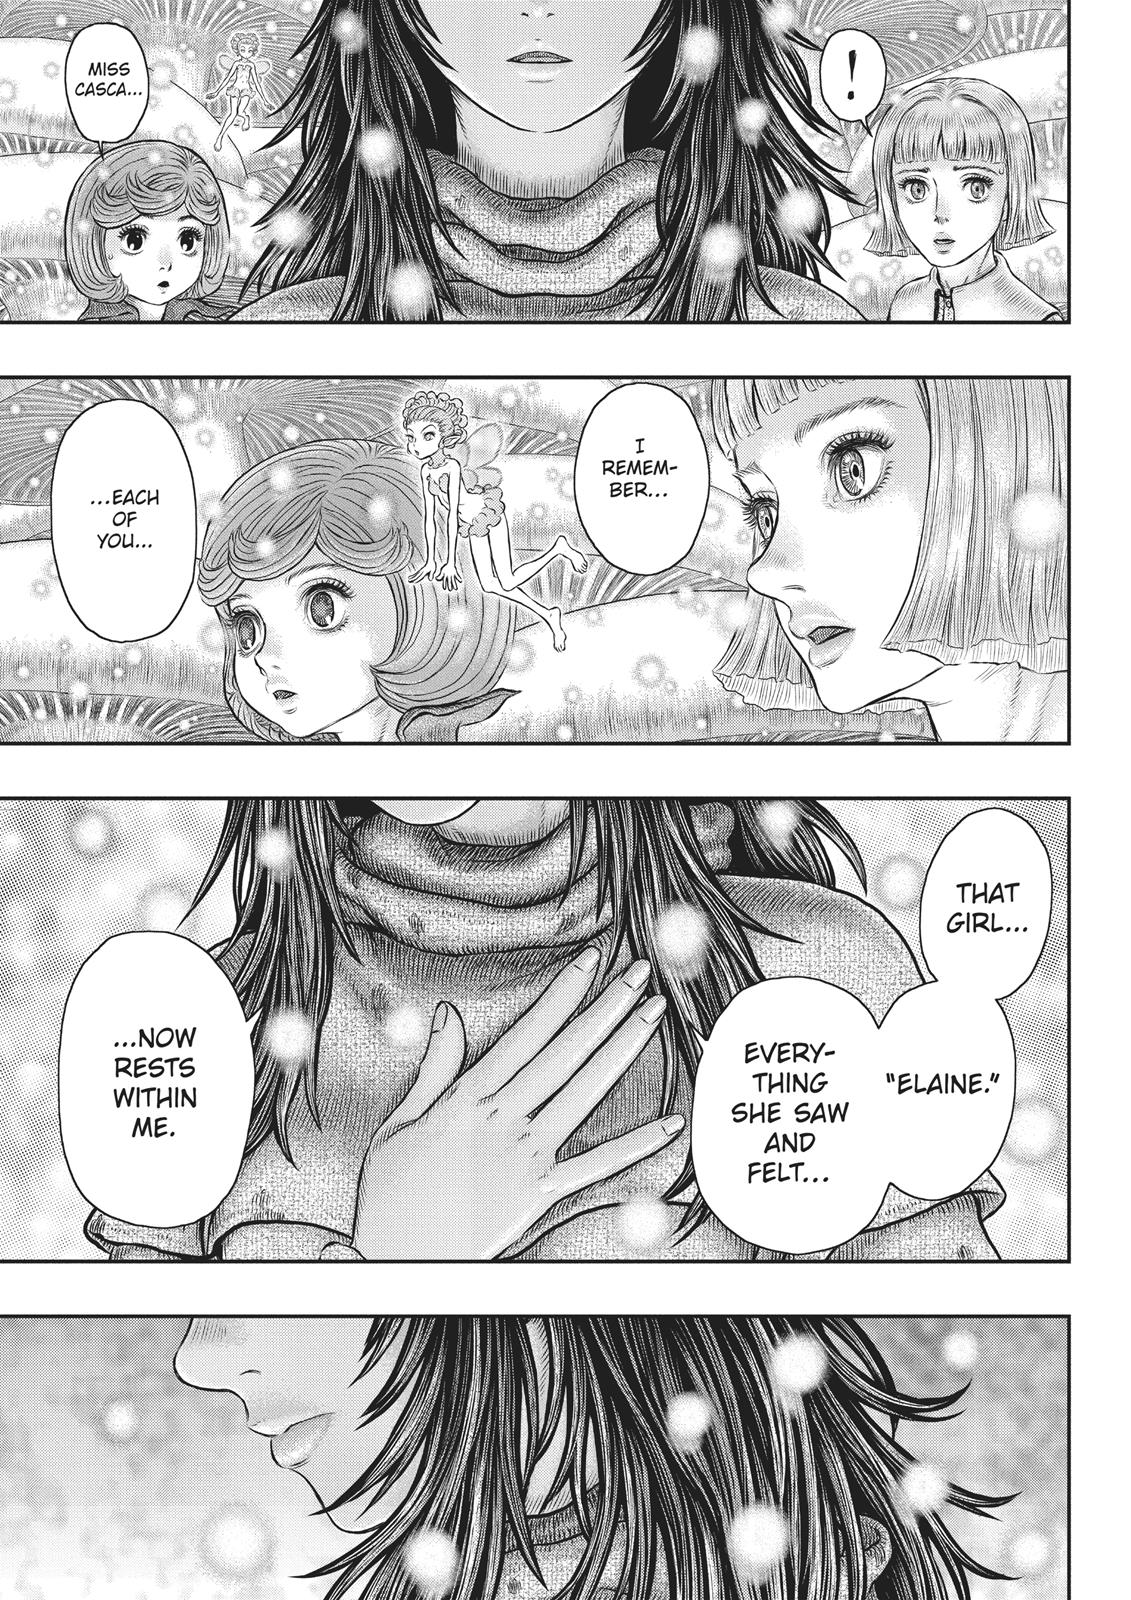 Berserk Manga Chapter 355 image 03